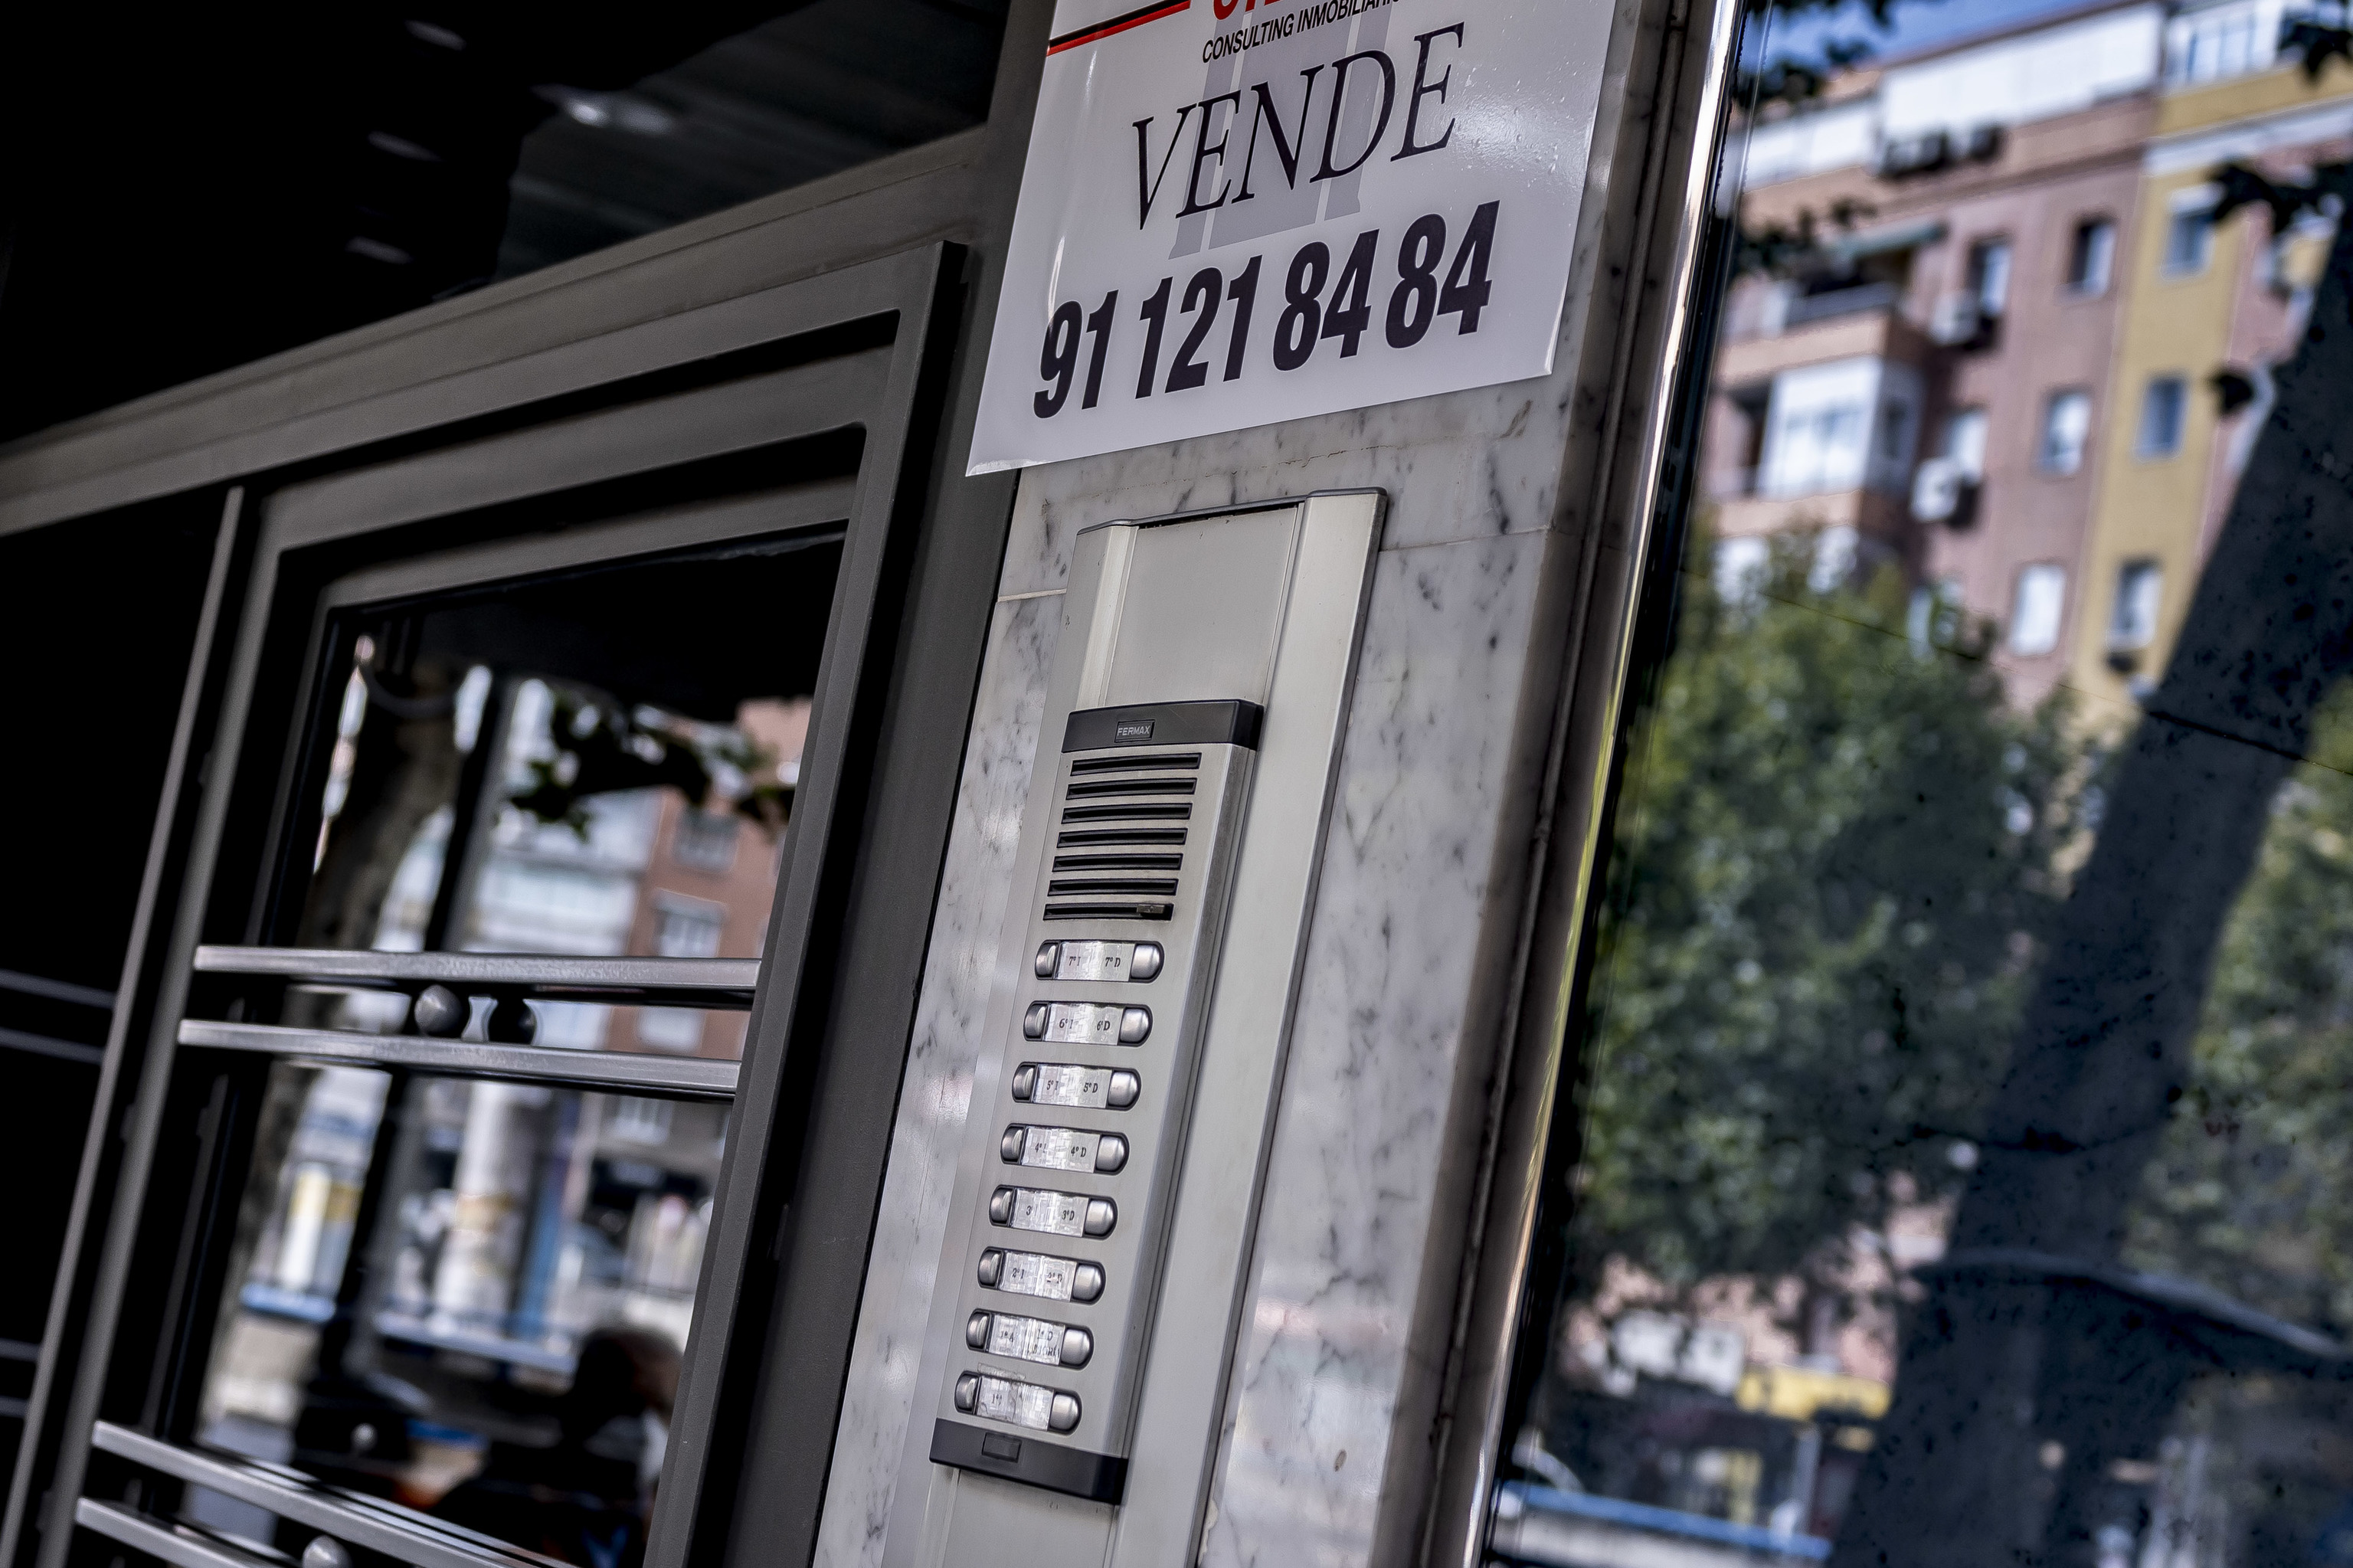 Anuncio para vender una vivienda, en Madrid.